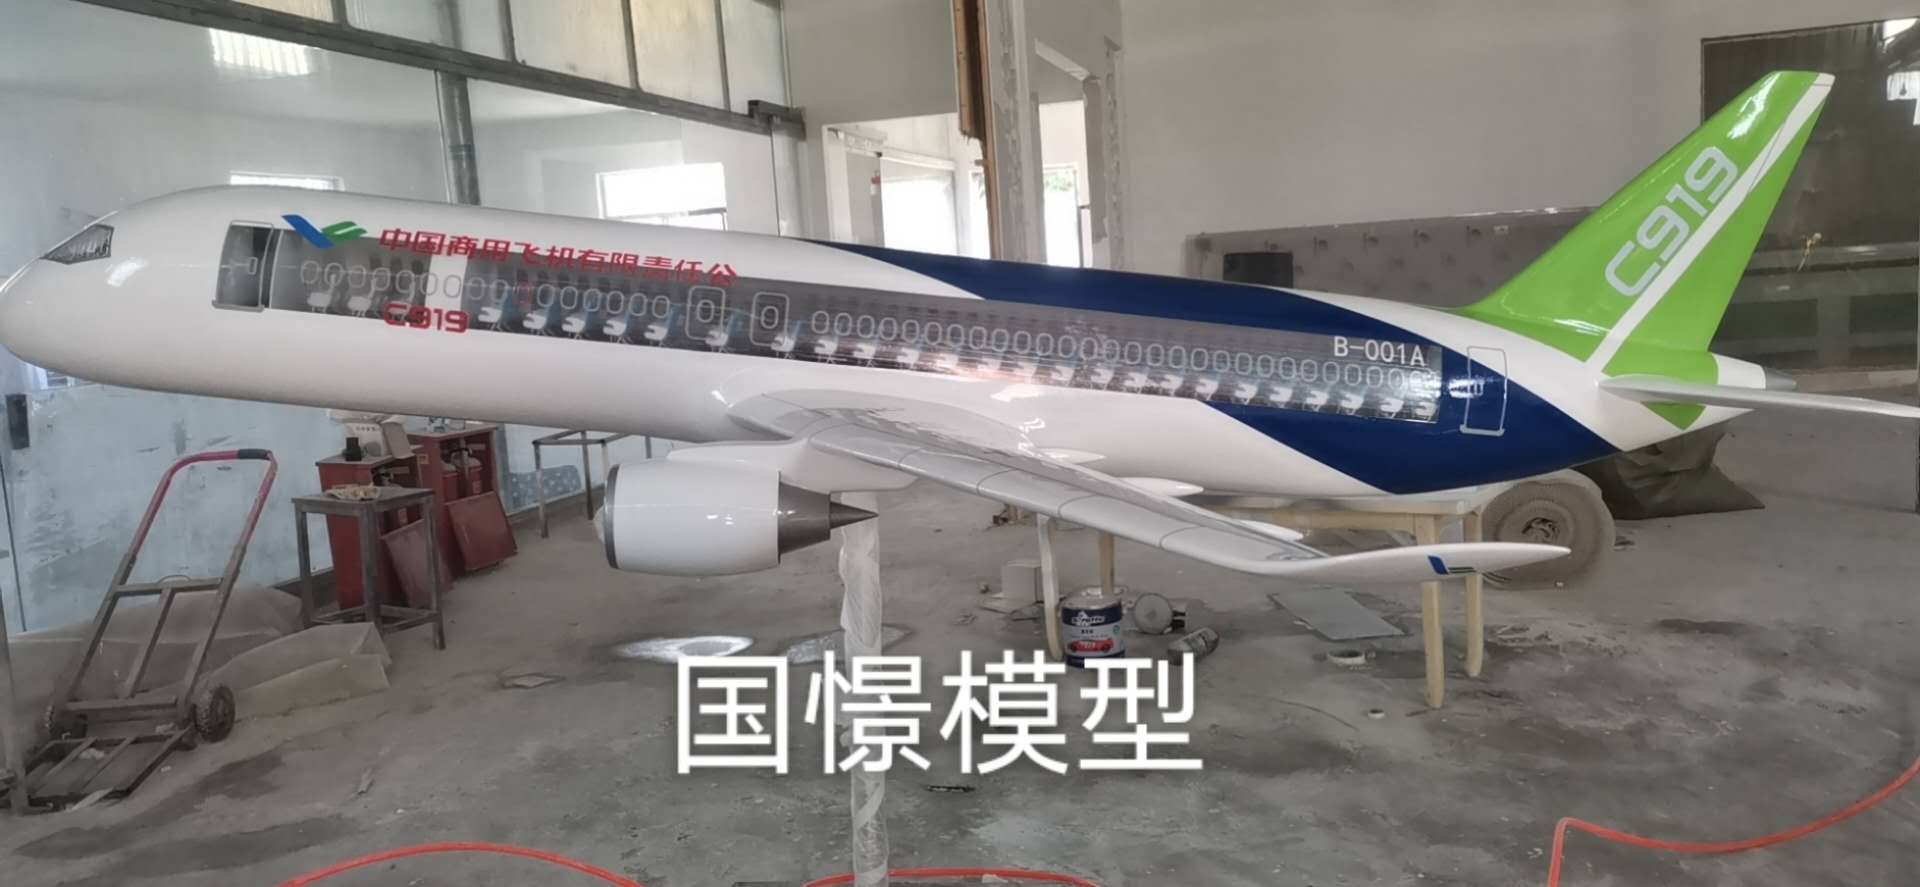 文水县飞机模型